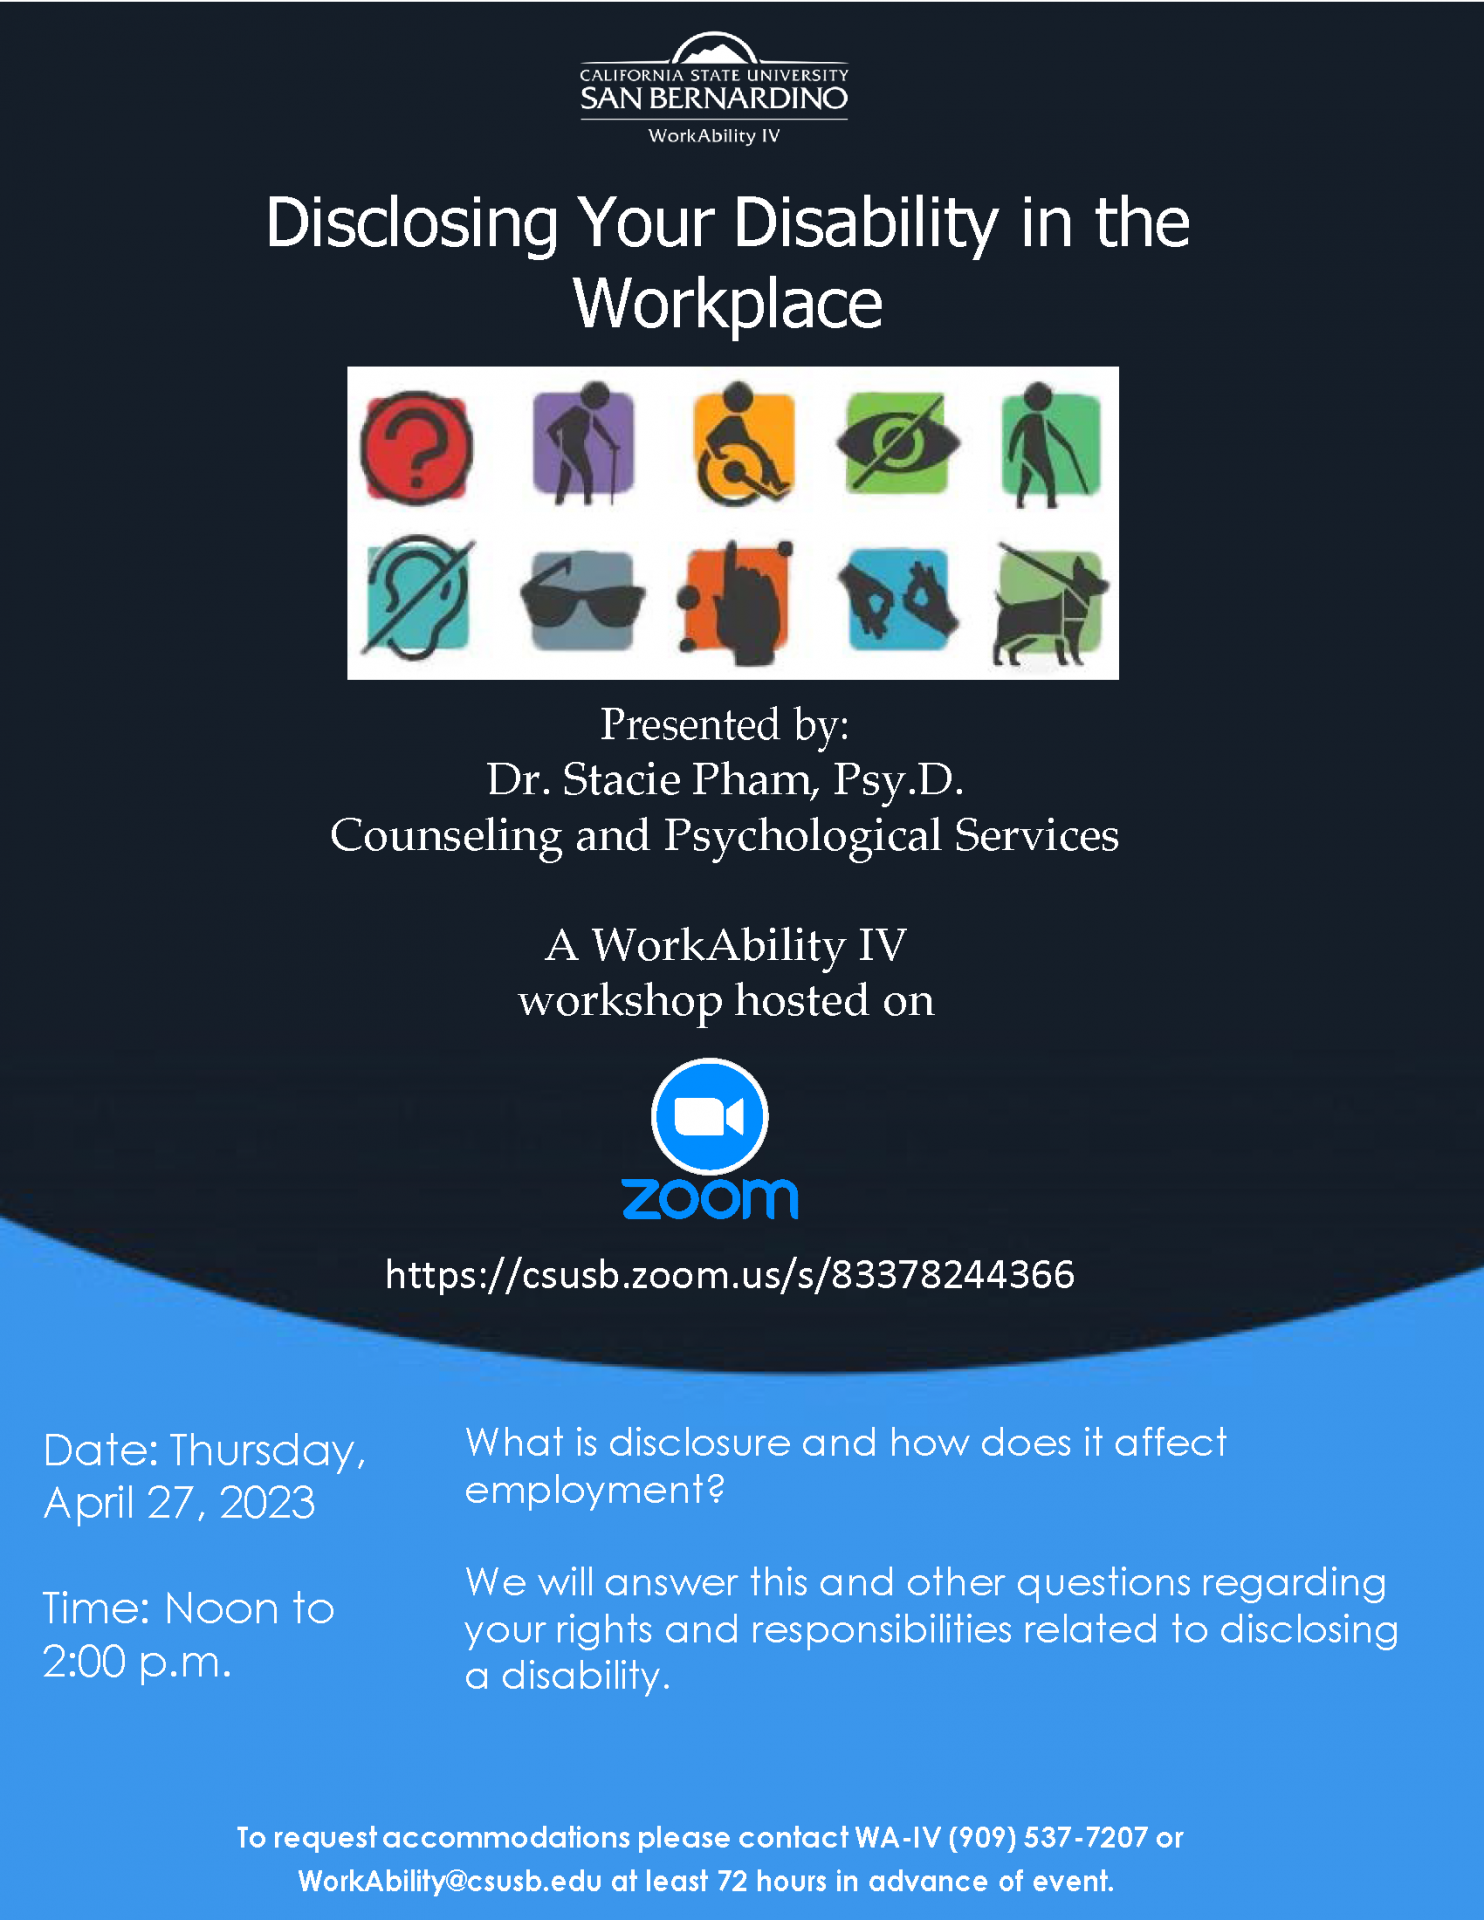 Image of WorkAbility IV Workshop flyer